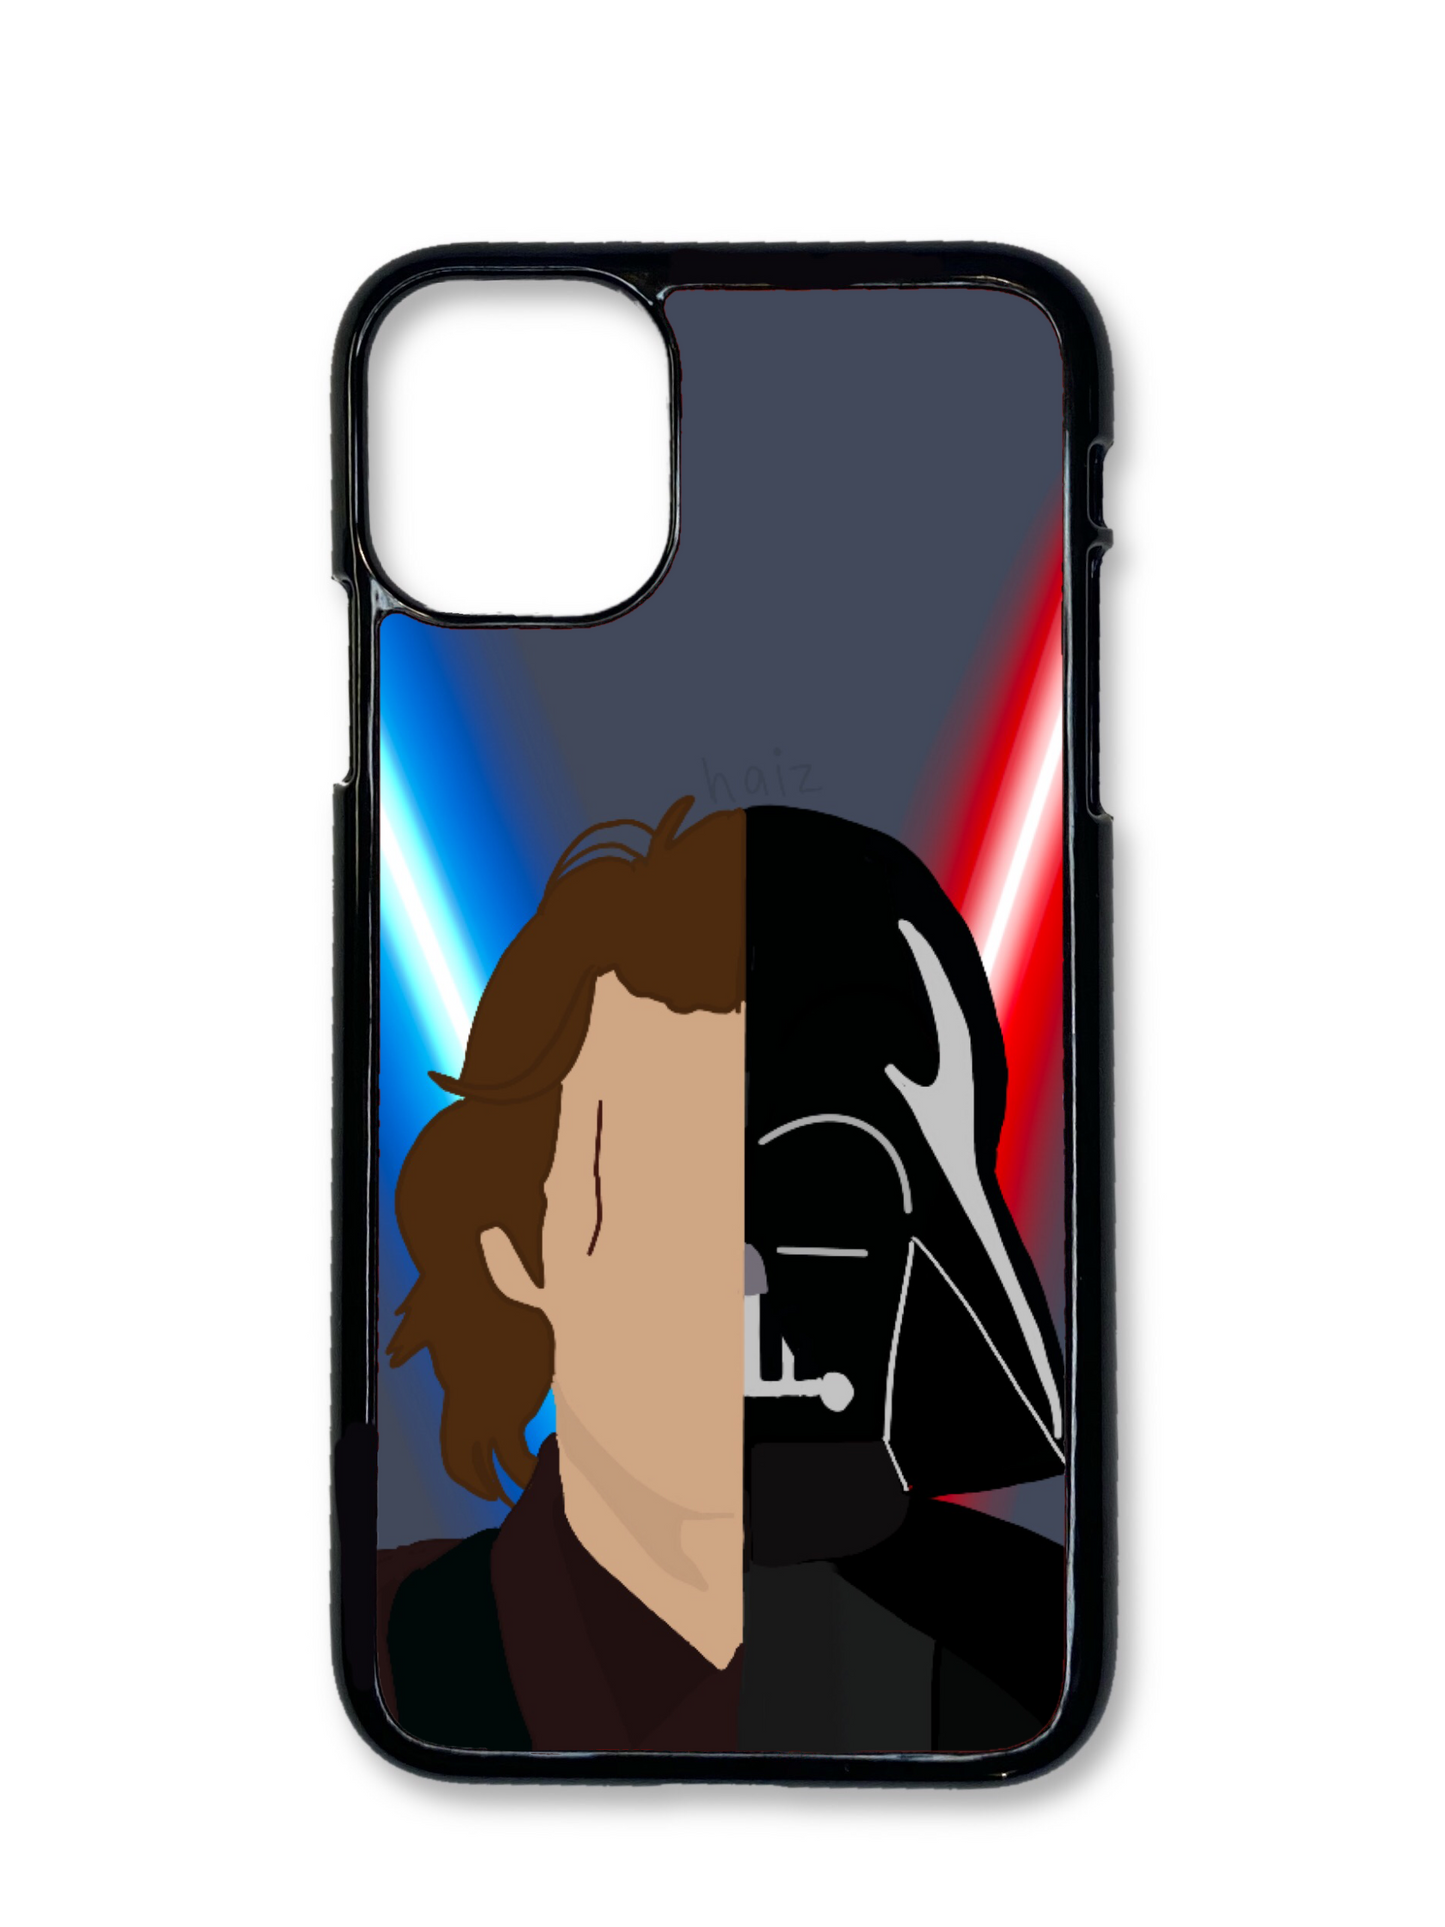 Anakin Skywalker/Darth Vader Phone Case